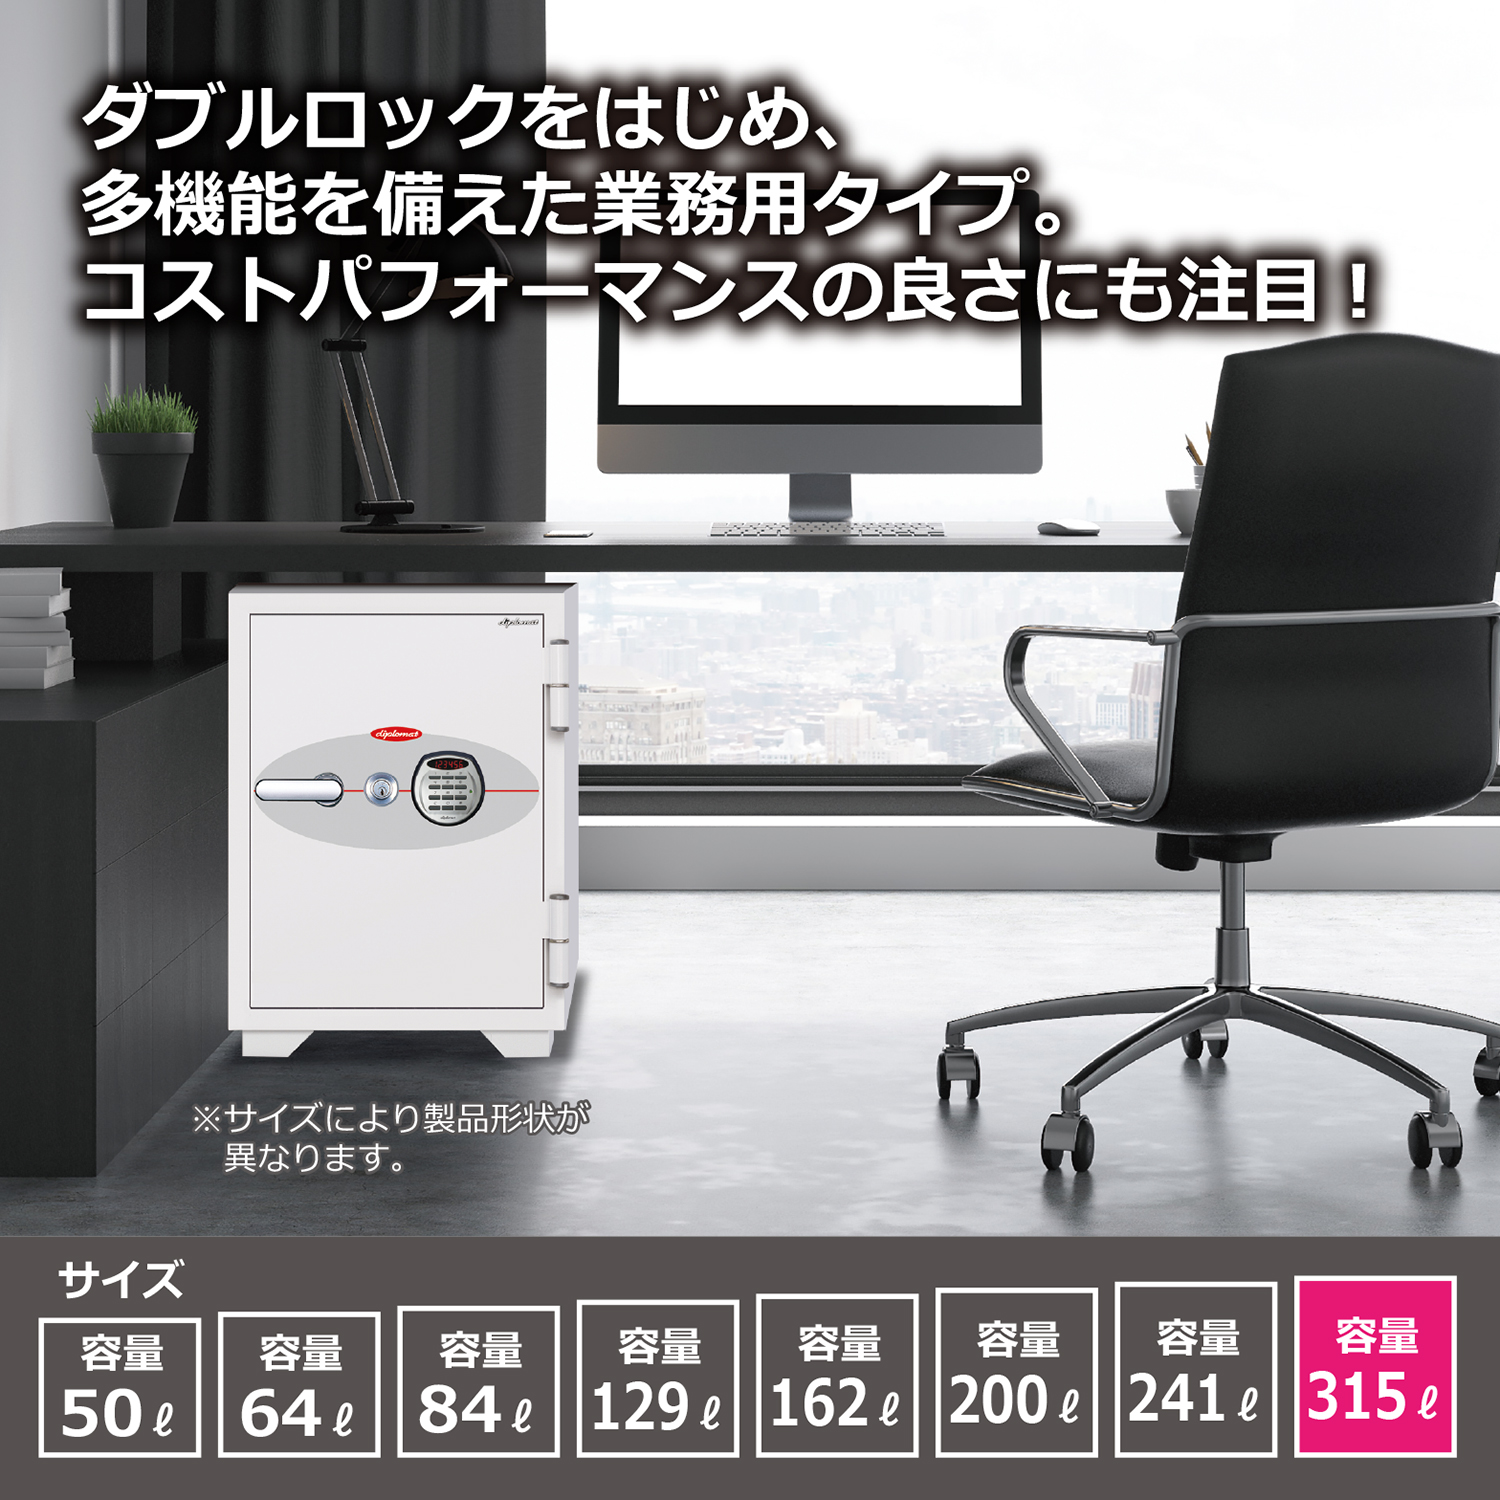 ダブルロック式 オフィス用耐火金庫 315L（W775×D690×H1445）